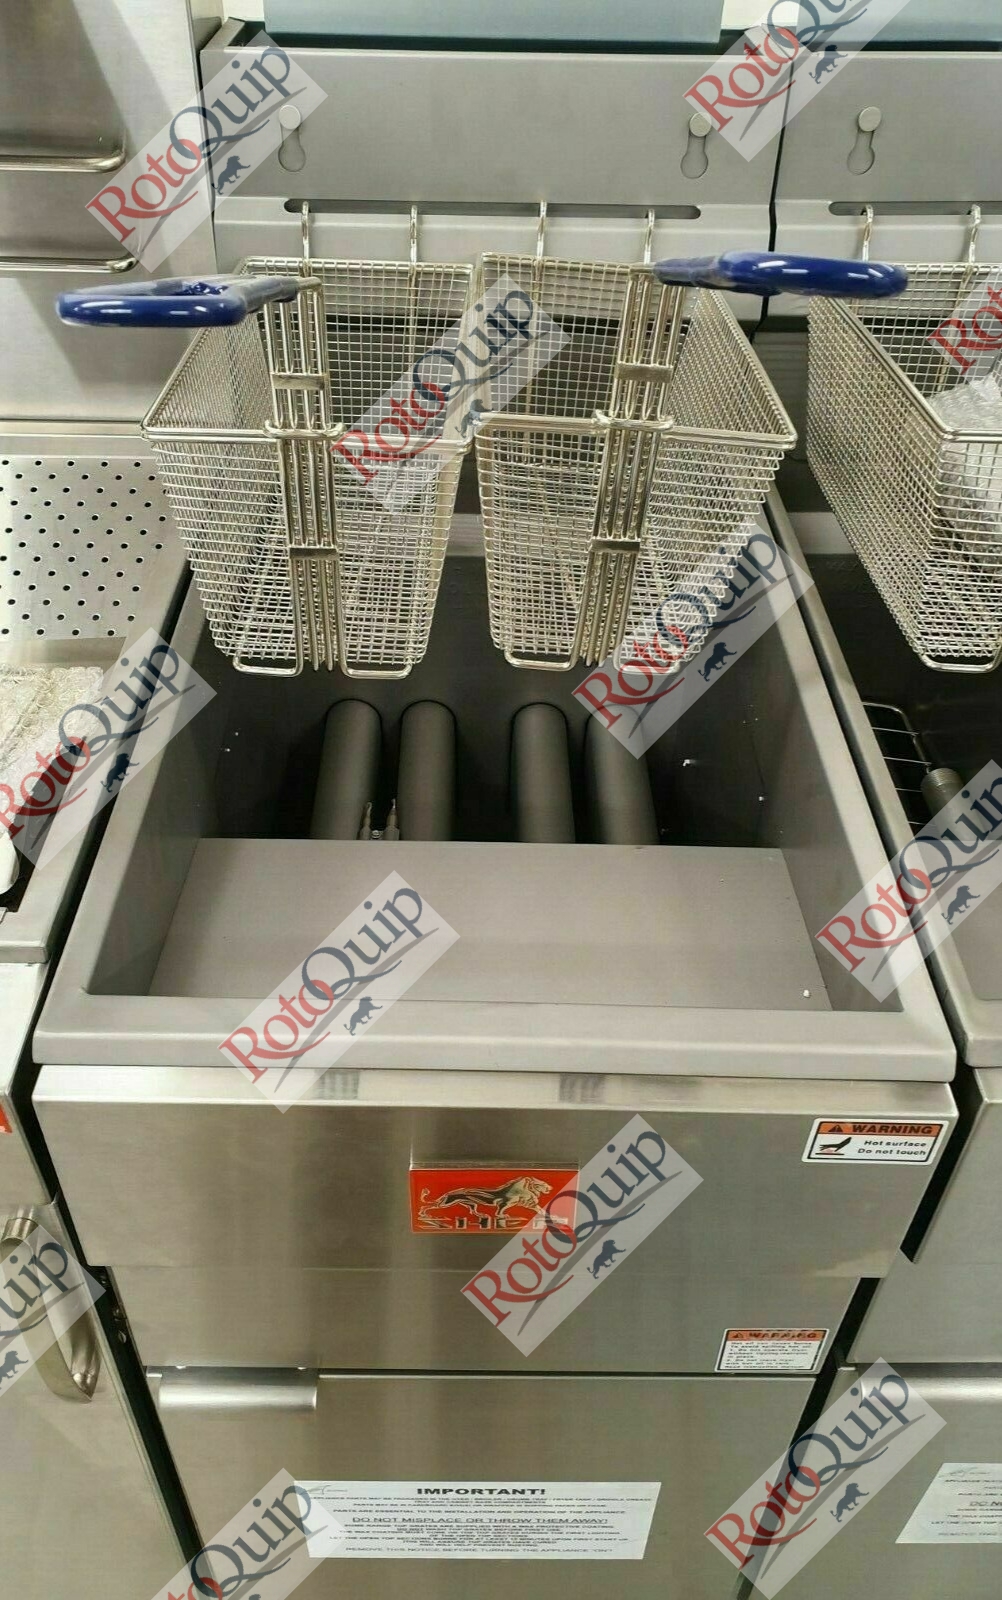 RGF-120 – 26 Litre Twin Basket 4 Burner Gas Fryer